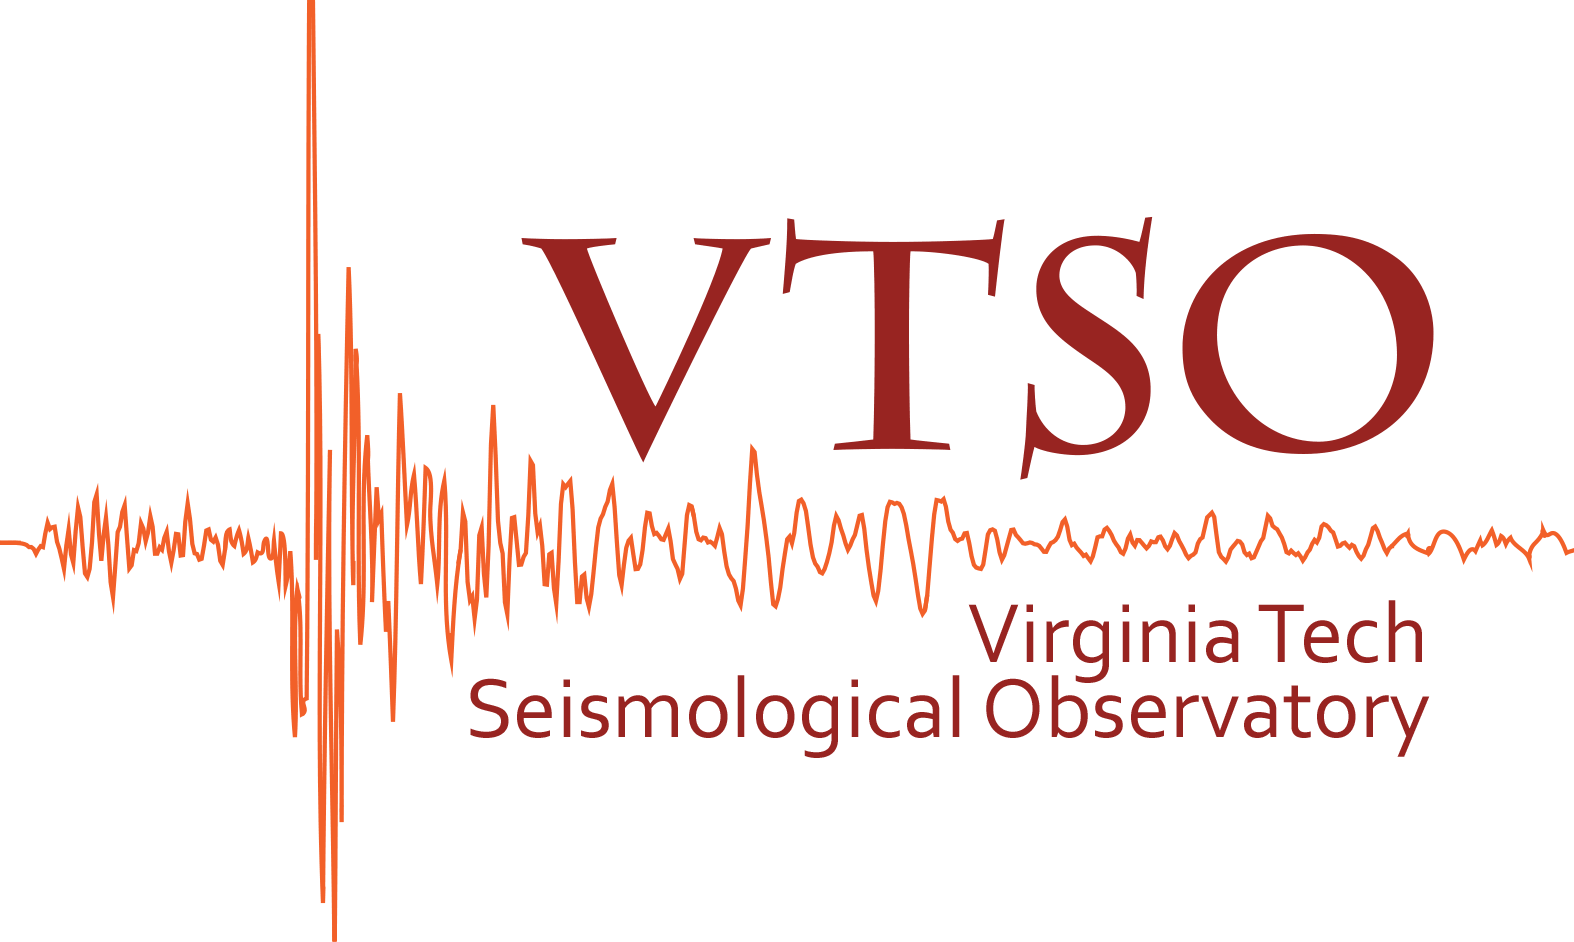 Virginia Tech Seismological Observatory VTSO